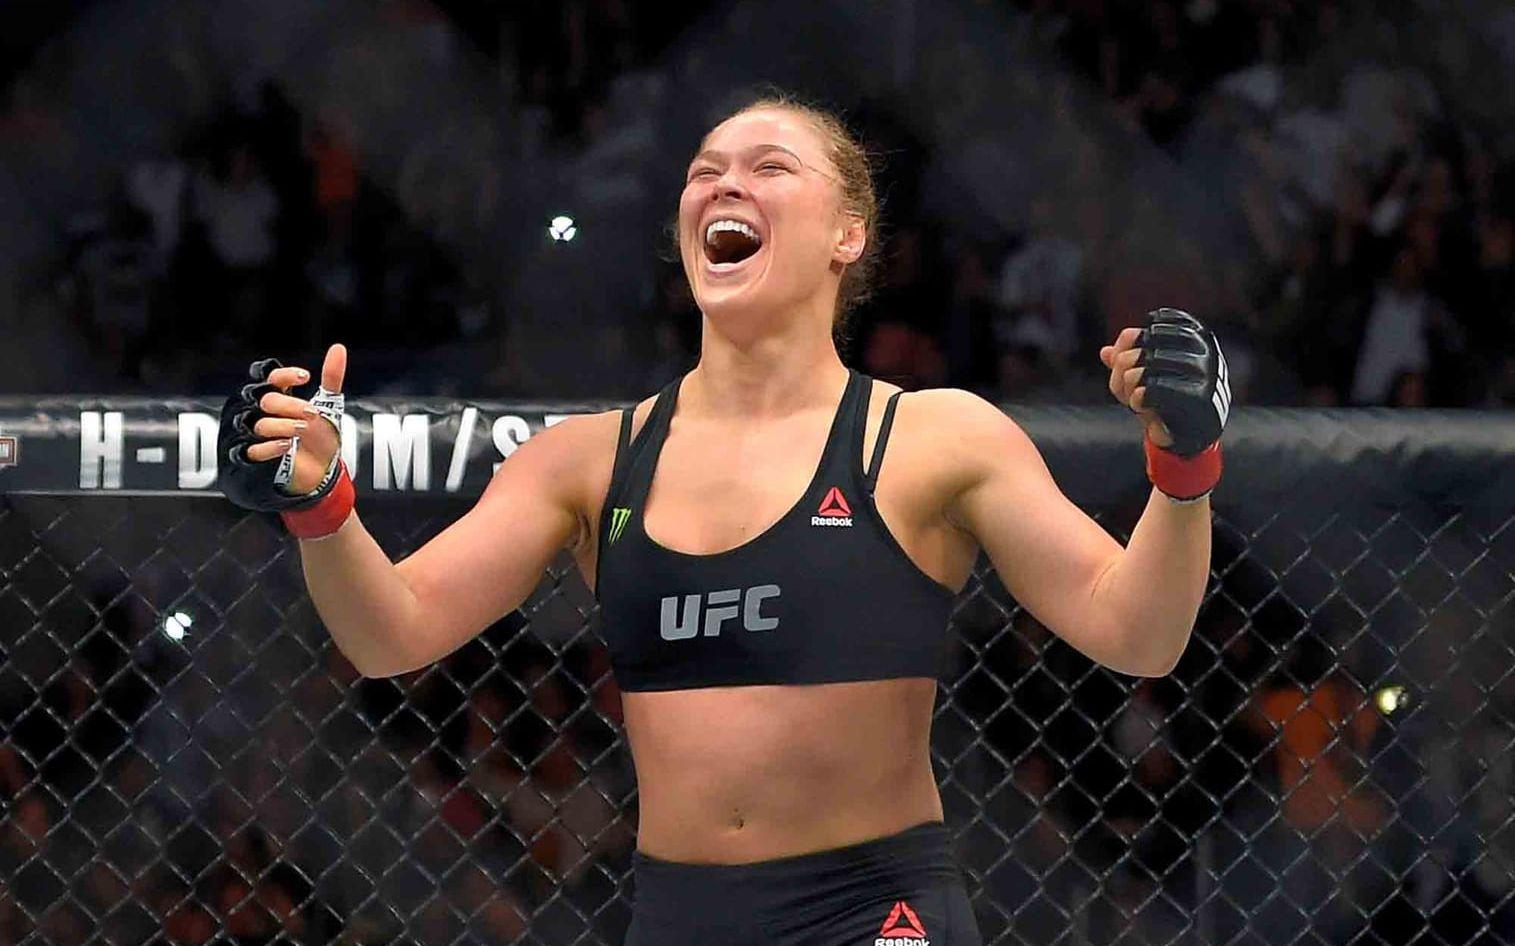 Amerikanskans bedrift för att komma med på listan var att hon krävde att <strong>även kvinnor skulle fajtas i UFC. </strong> Foto: TT